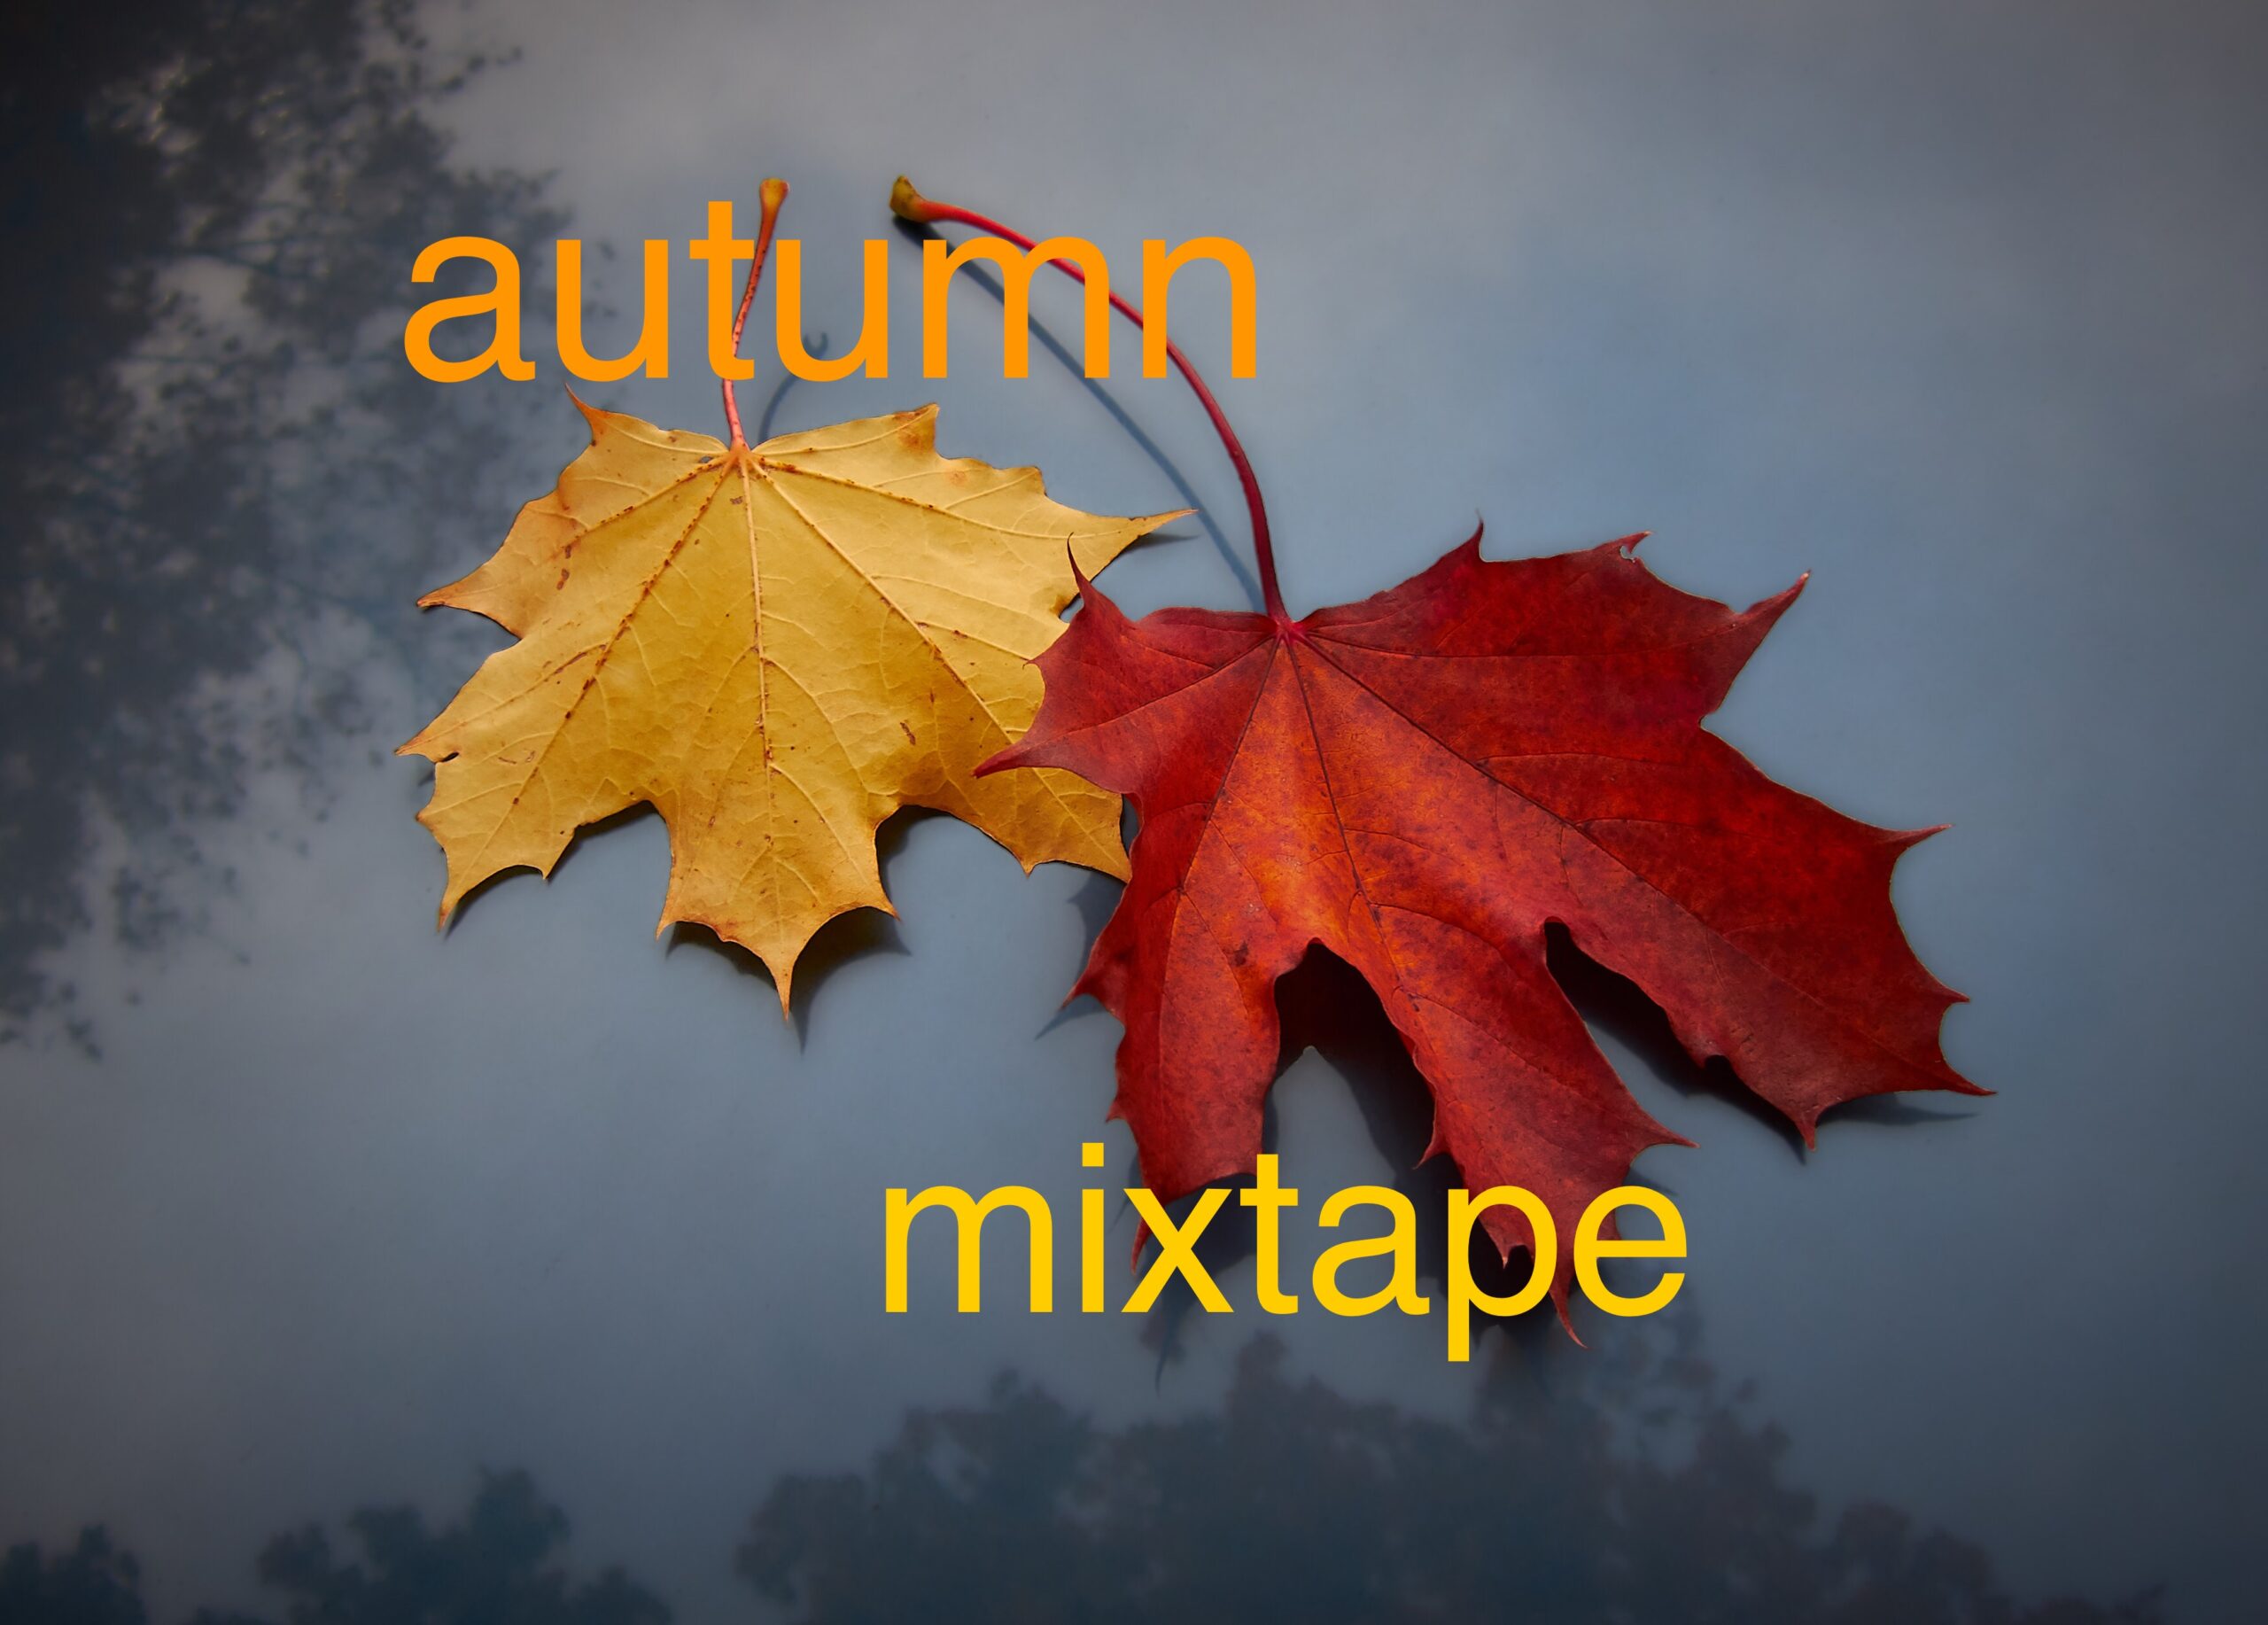 autumn mixtape leaves